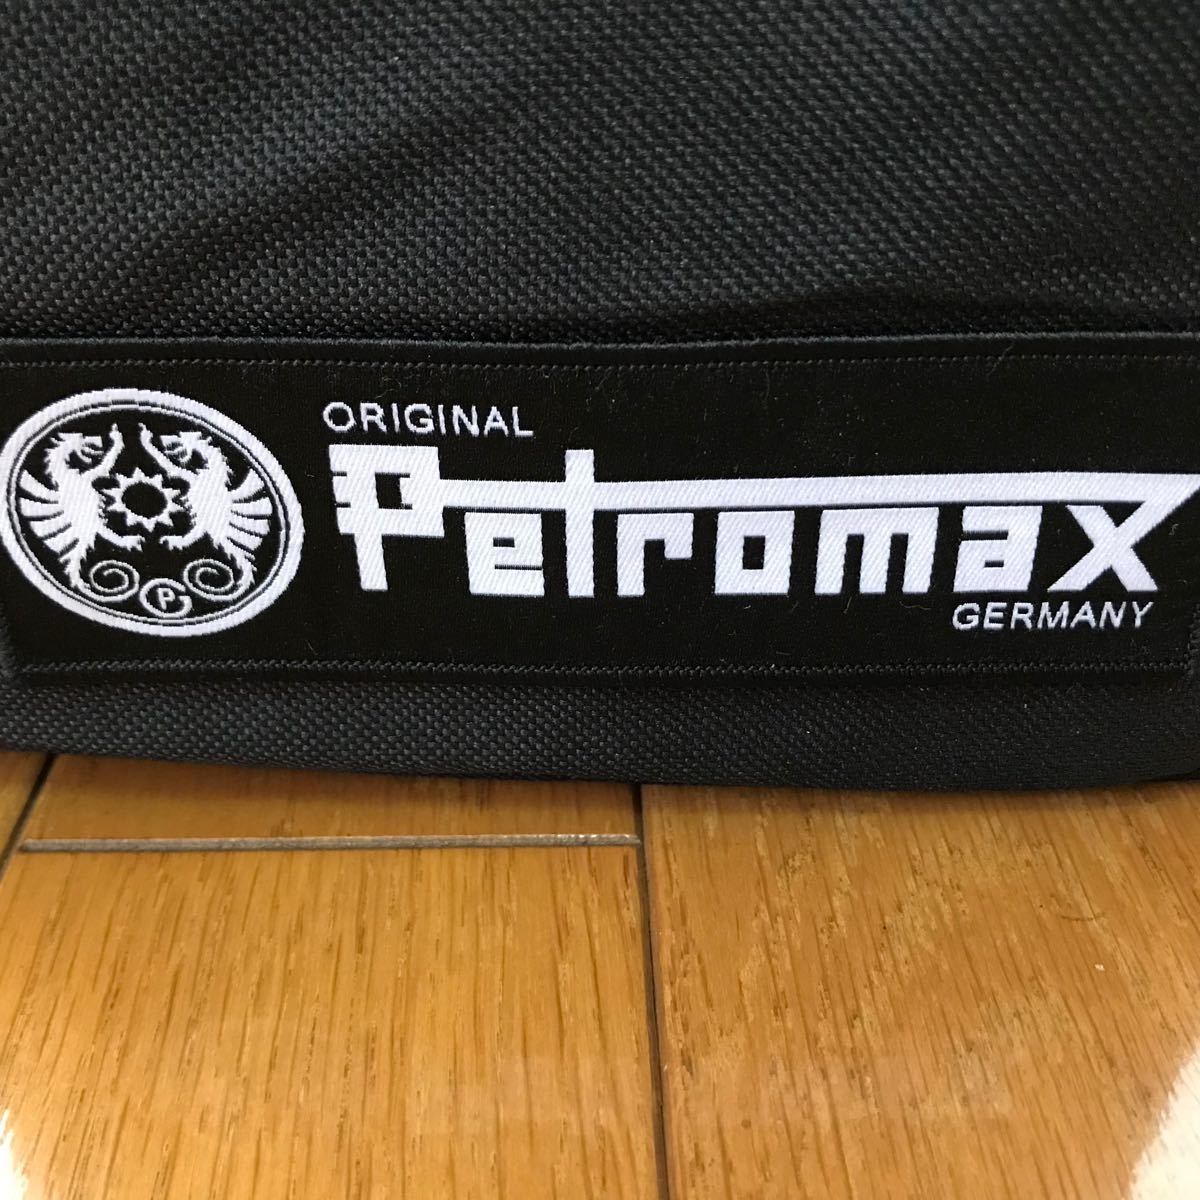 ◆レア◆ 新品未使用 PETROMAX PATCH  Made in Germany ワッペン